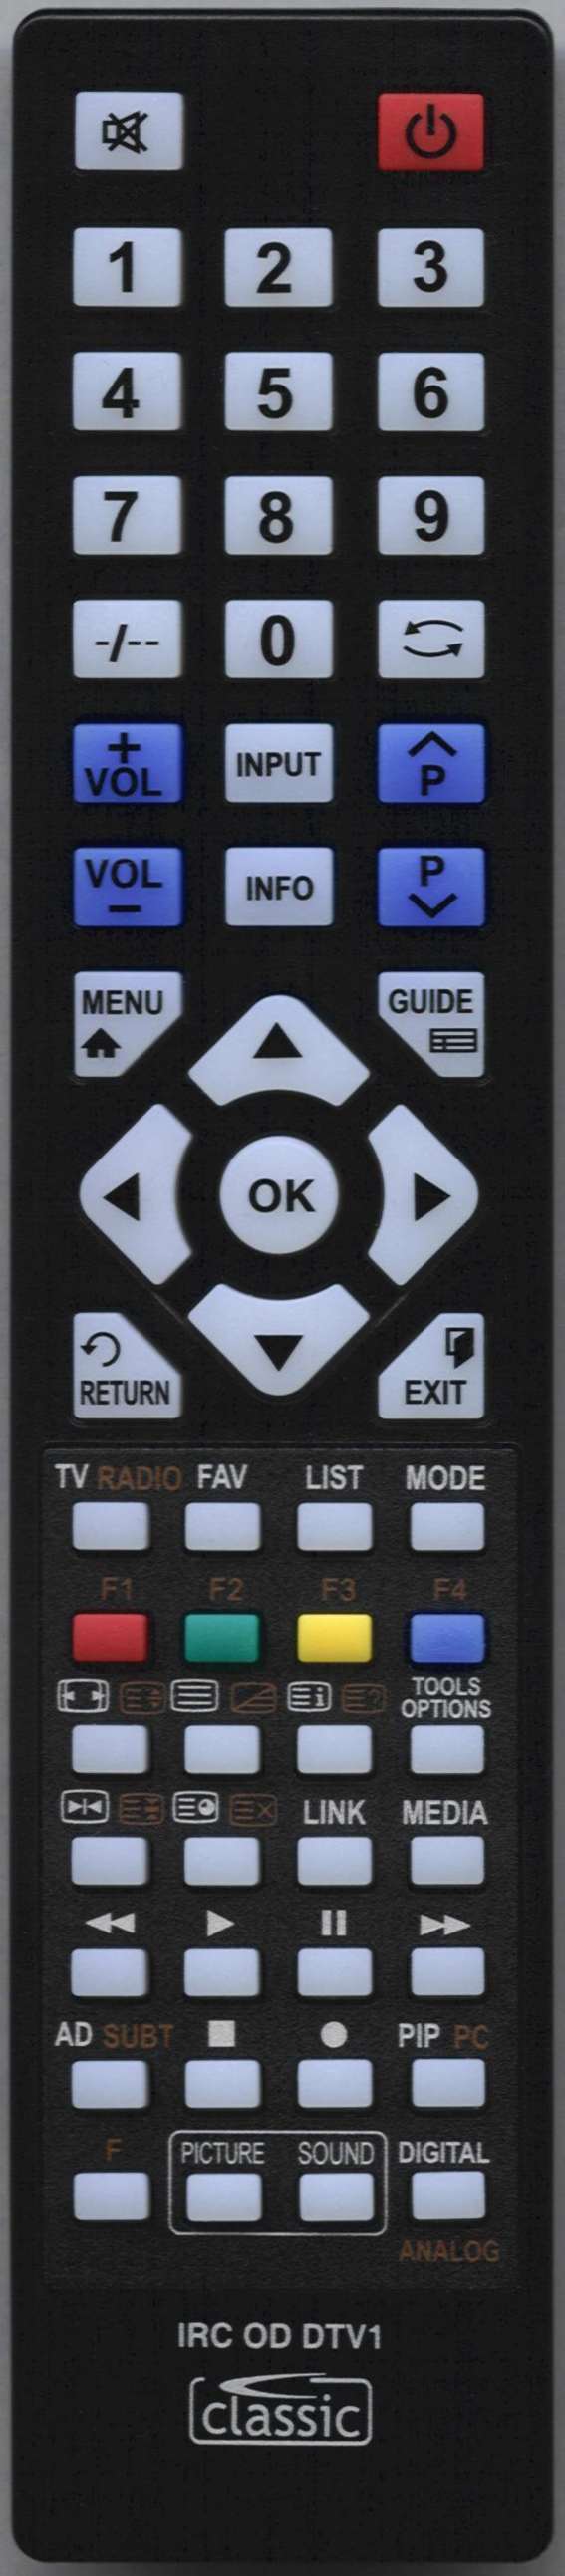 LUXOR LUX0148006/01 Remote Control Alternative